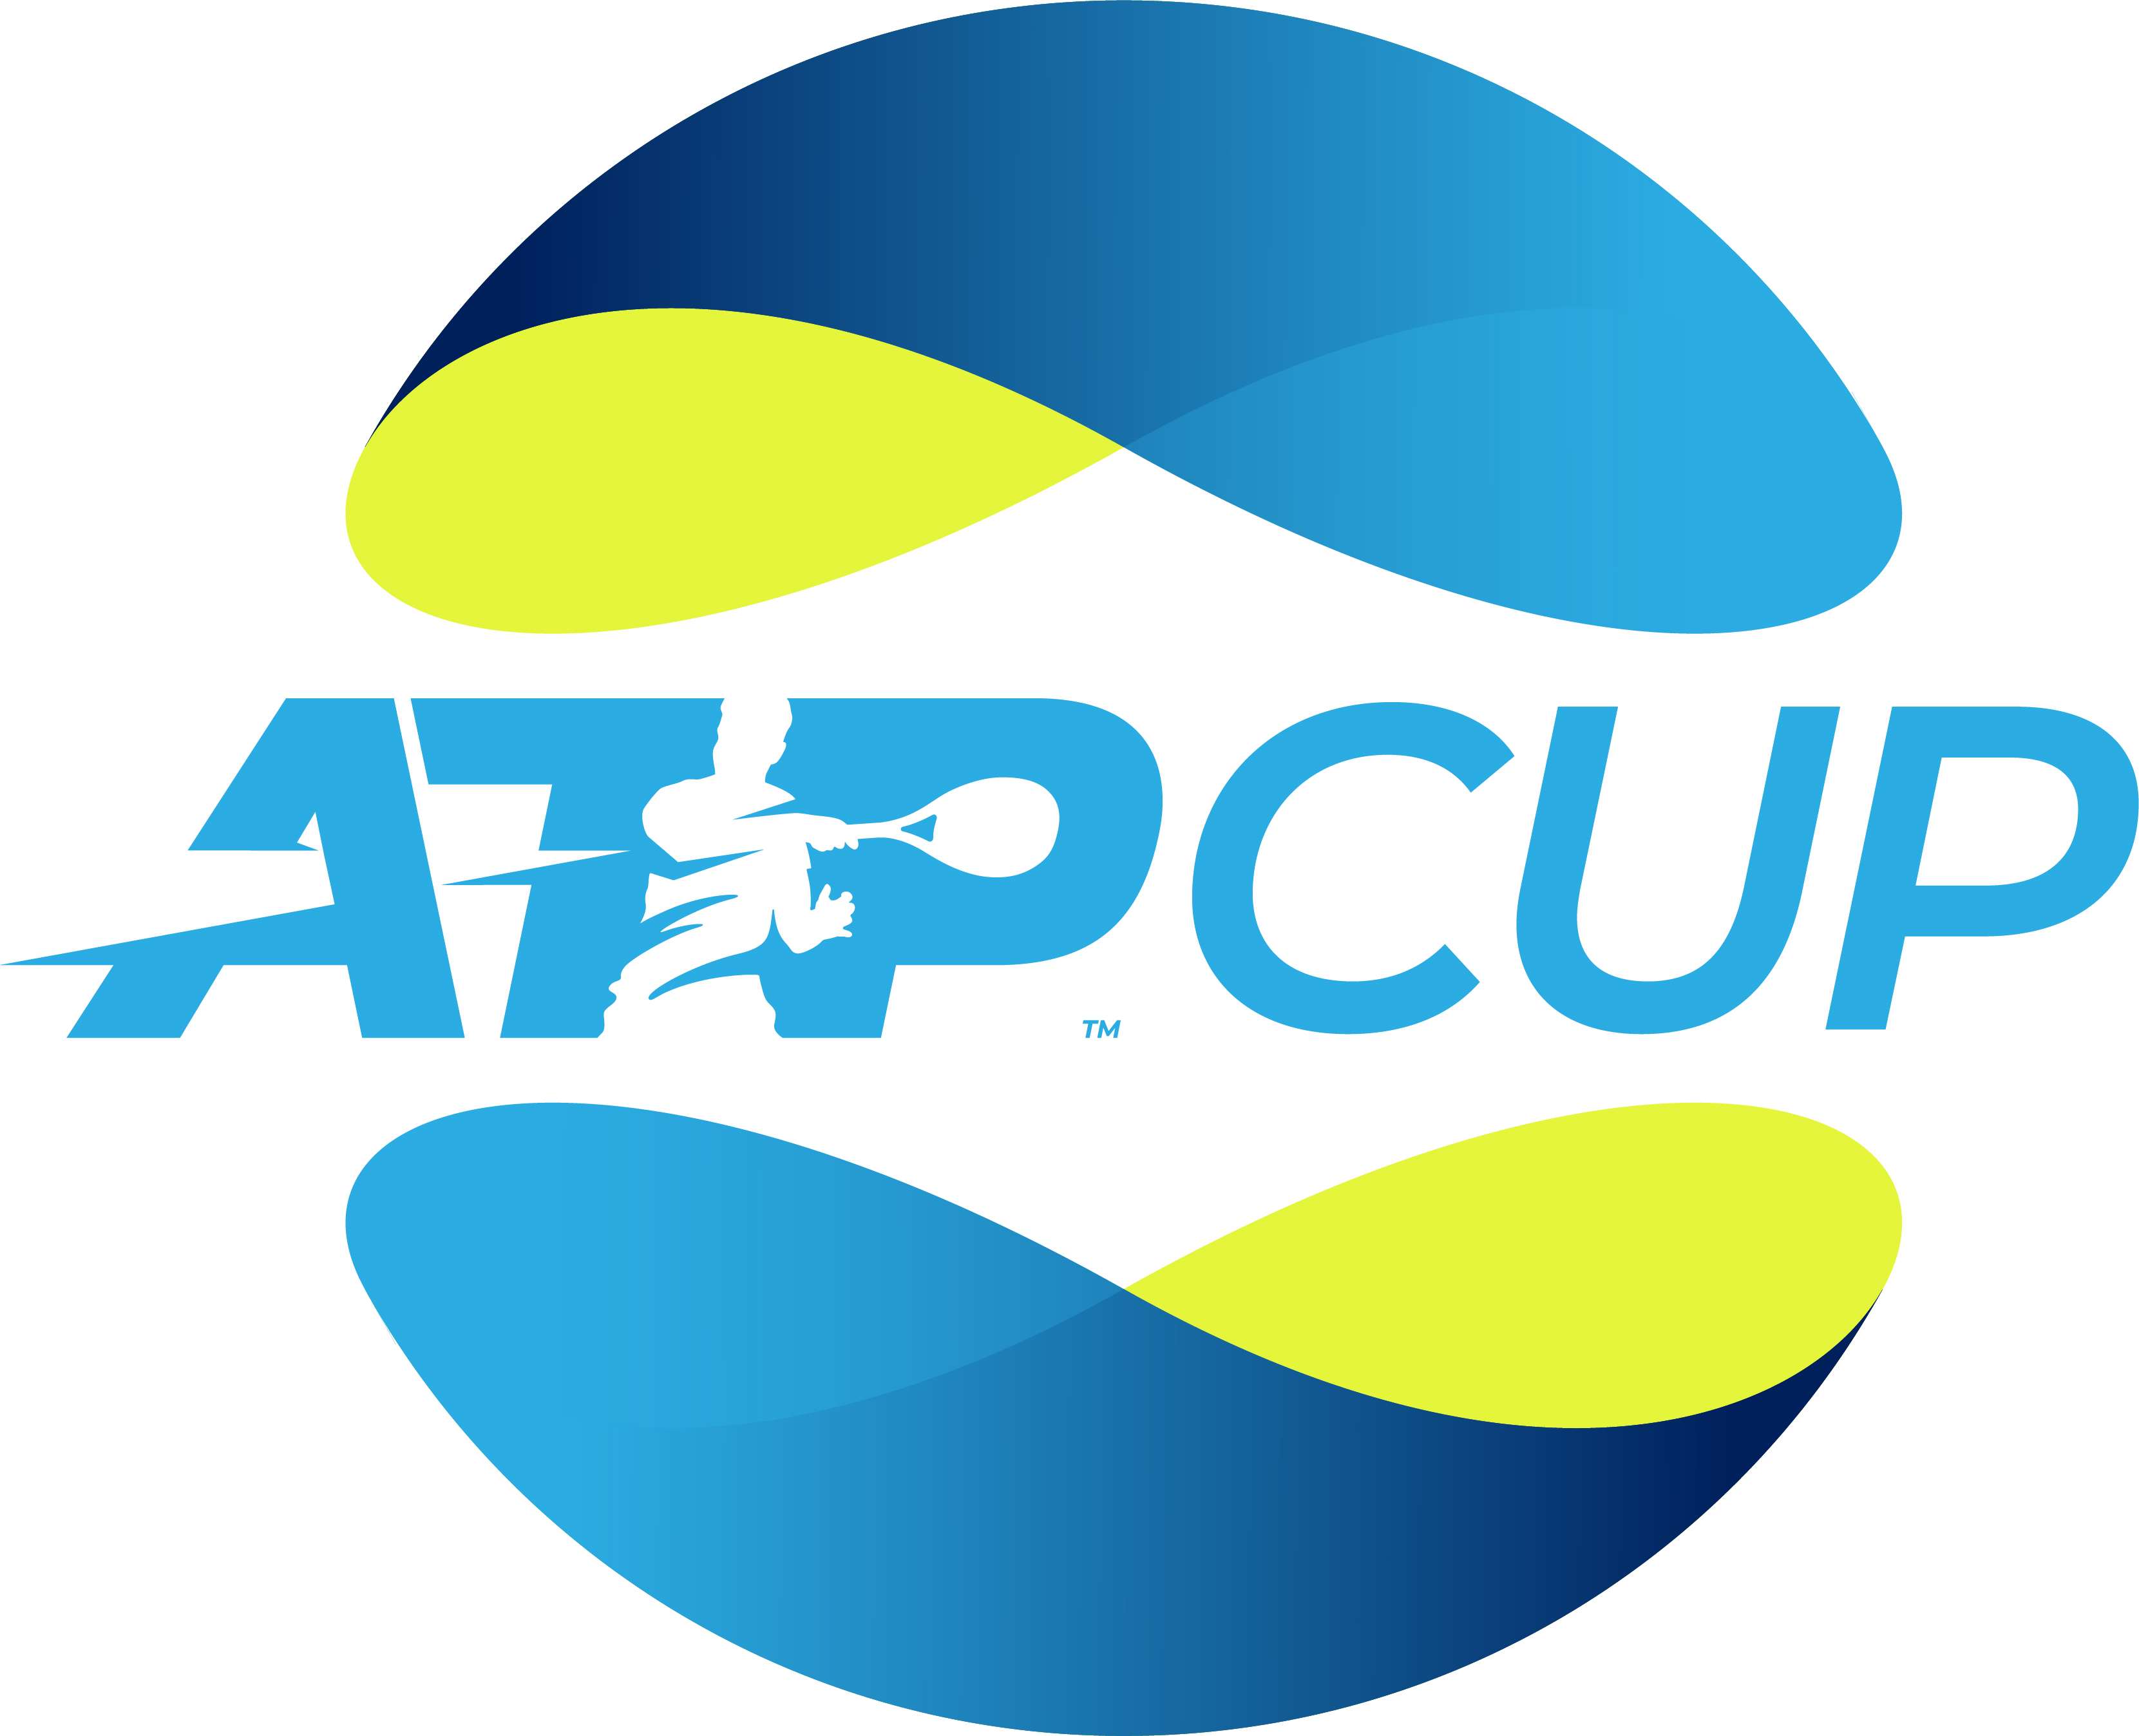 Sky Deutschland sichert sich die exklusiven Übertragungsrechte des ATP Cup in Deutschland Presseportal